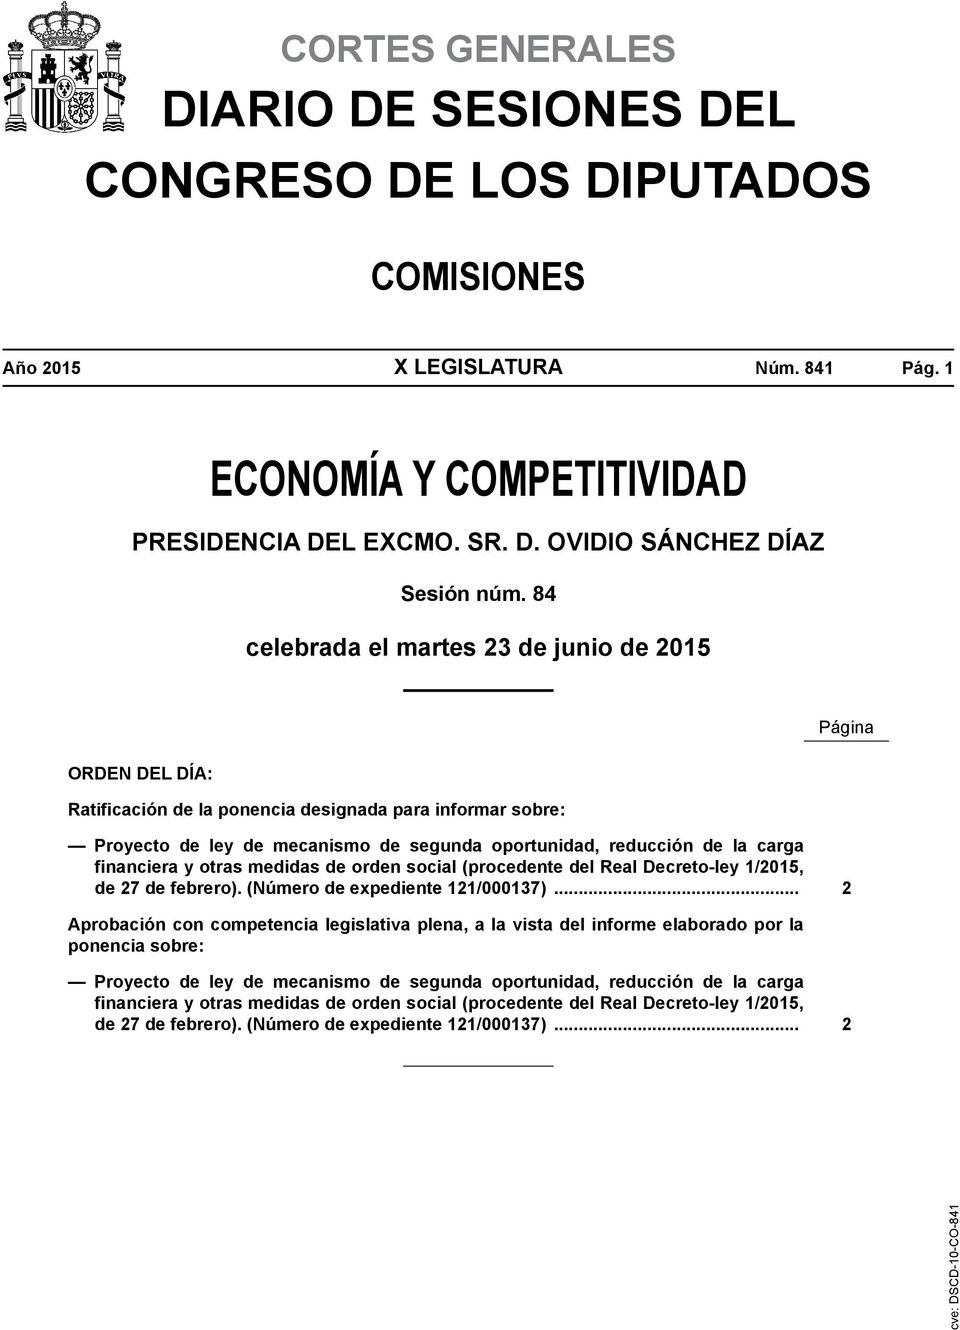 financiera y otras medidas de orden social (procedente del Real Decreto-ley 1/2015, de 27 de febrero). (Número de expediente 121/000137).